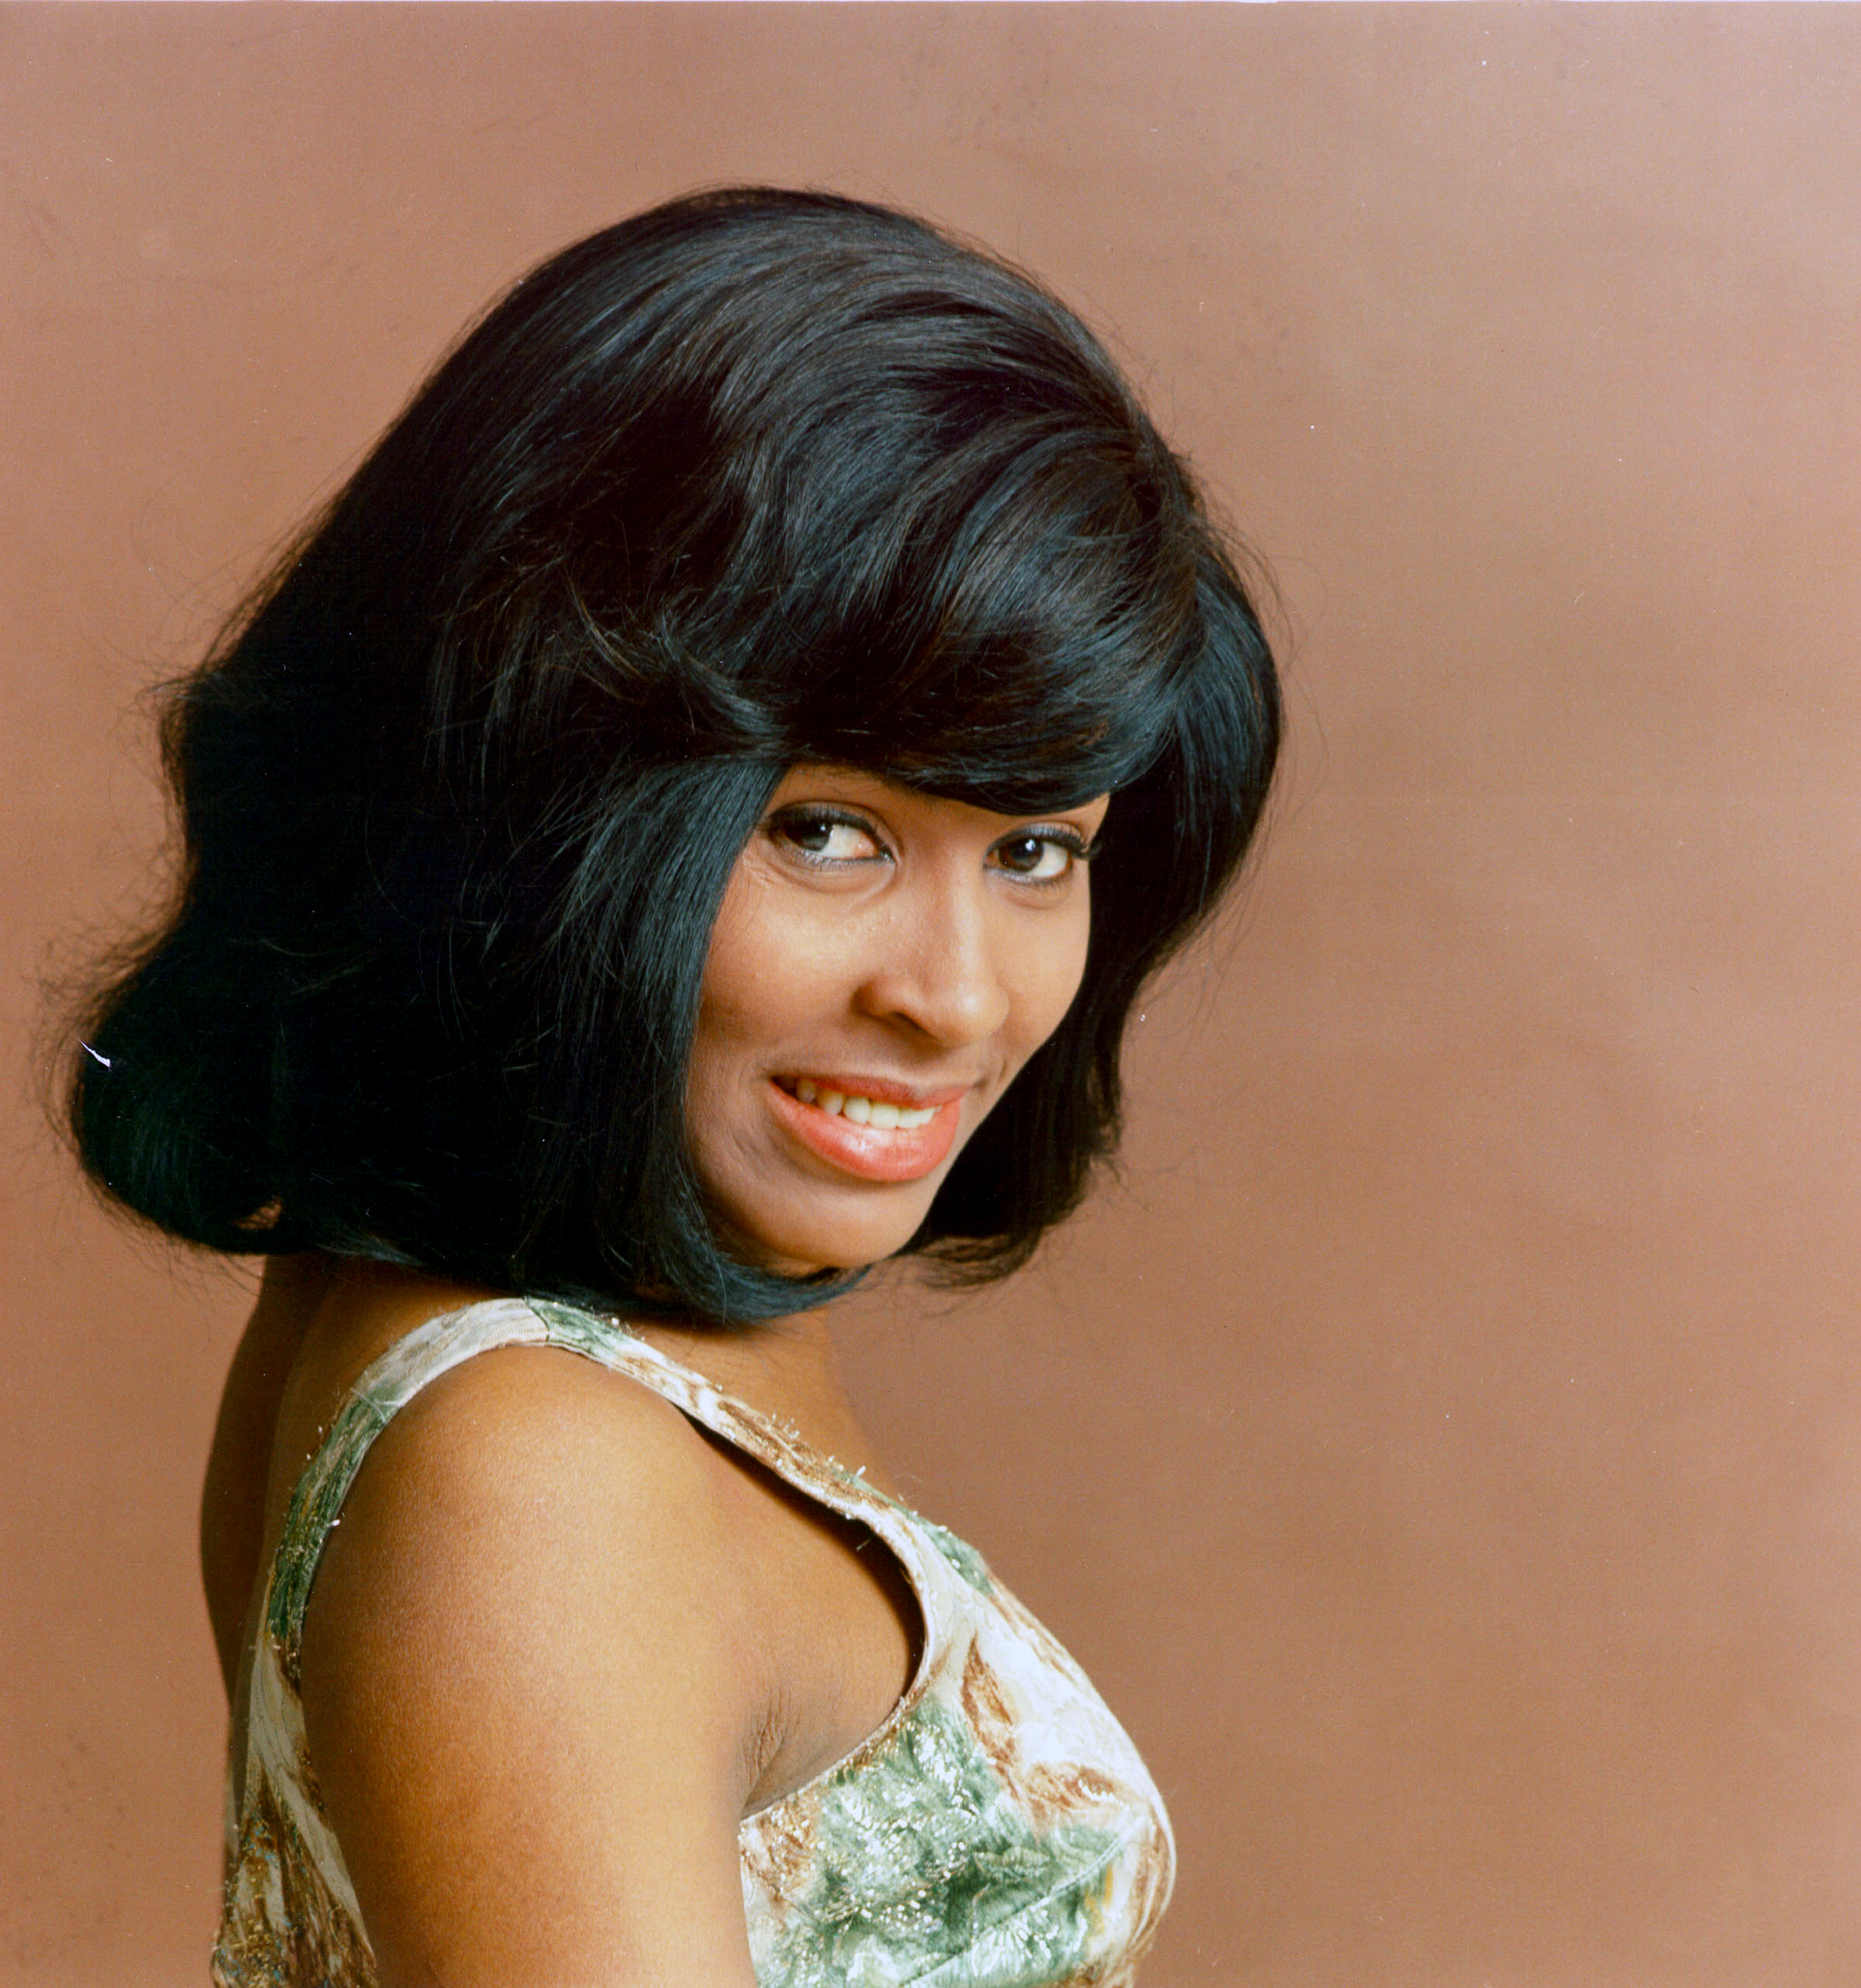 La cantante posa para un retrato en 1964. | Foto: Getty Images